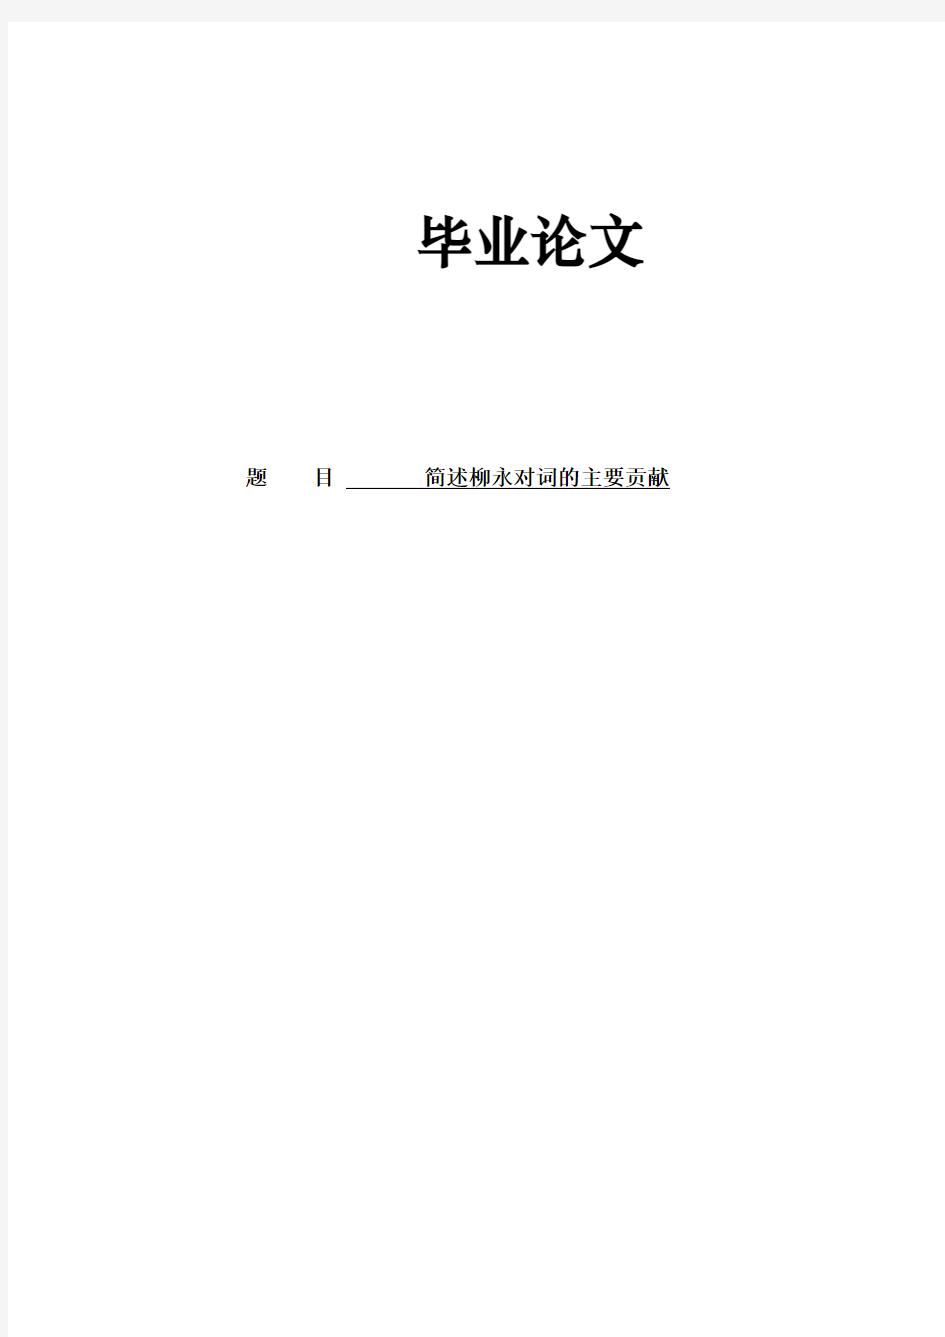 汉语言文学专业学士论文《简述柳永对词的主要贡献》